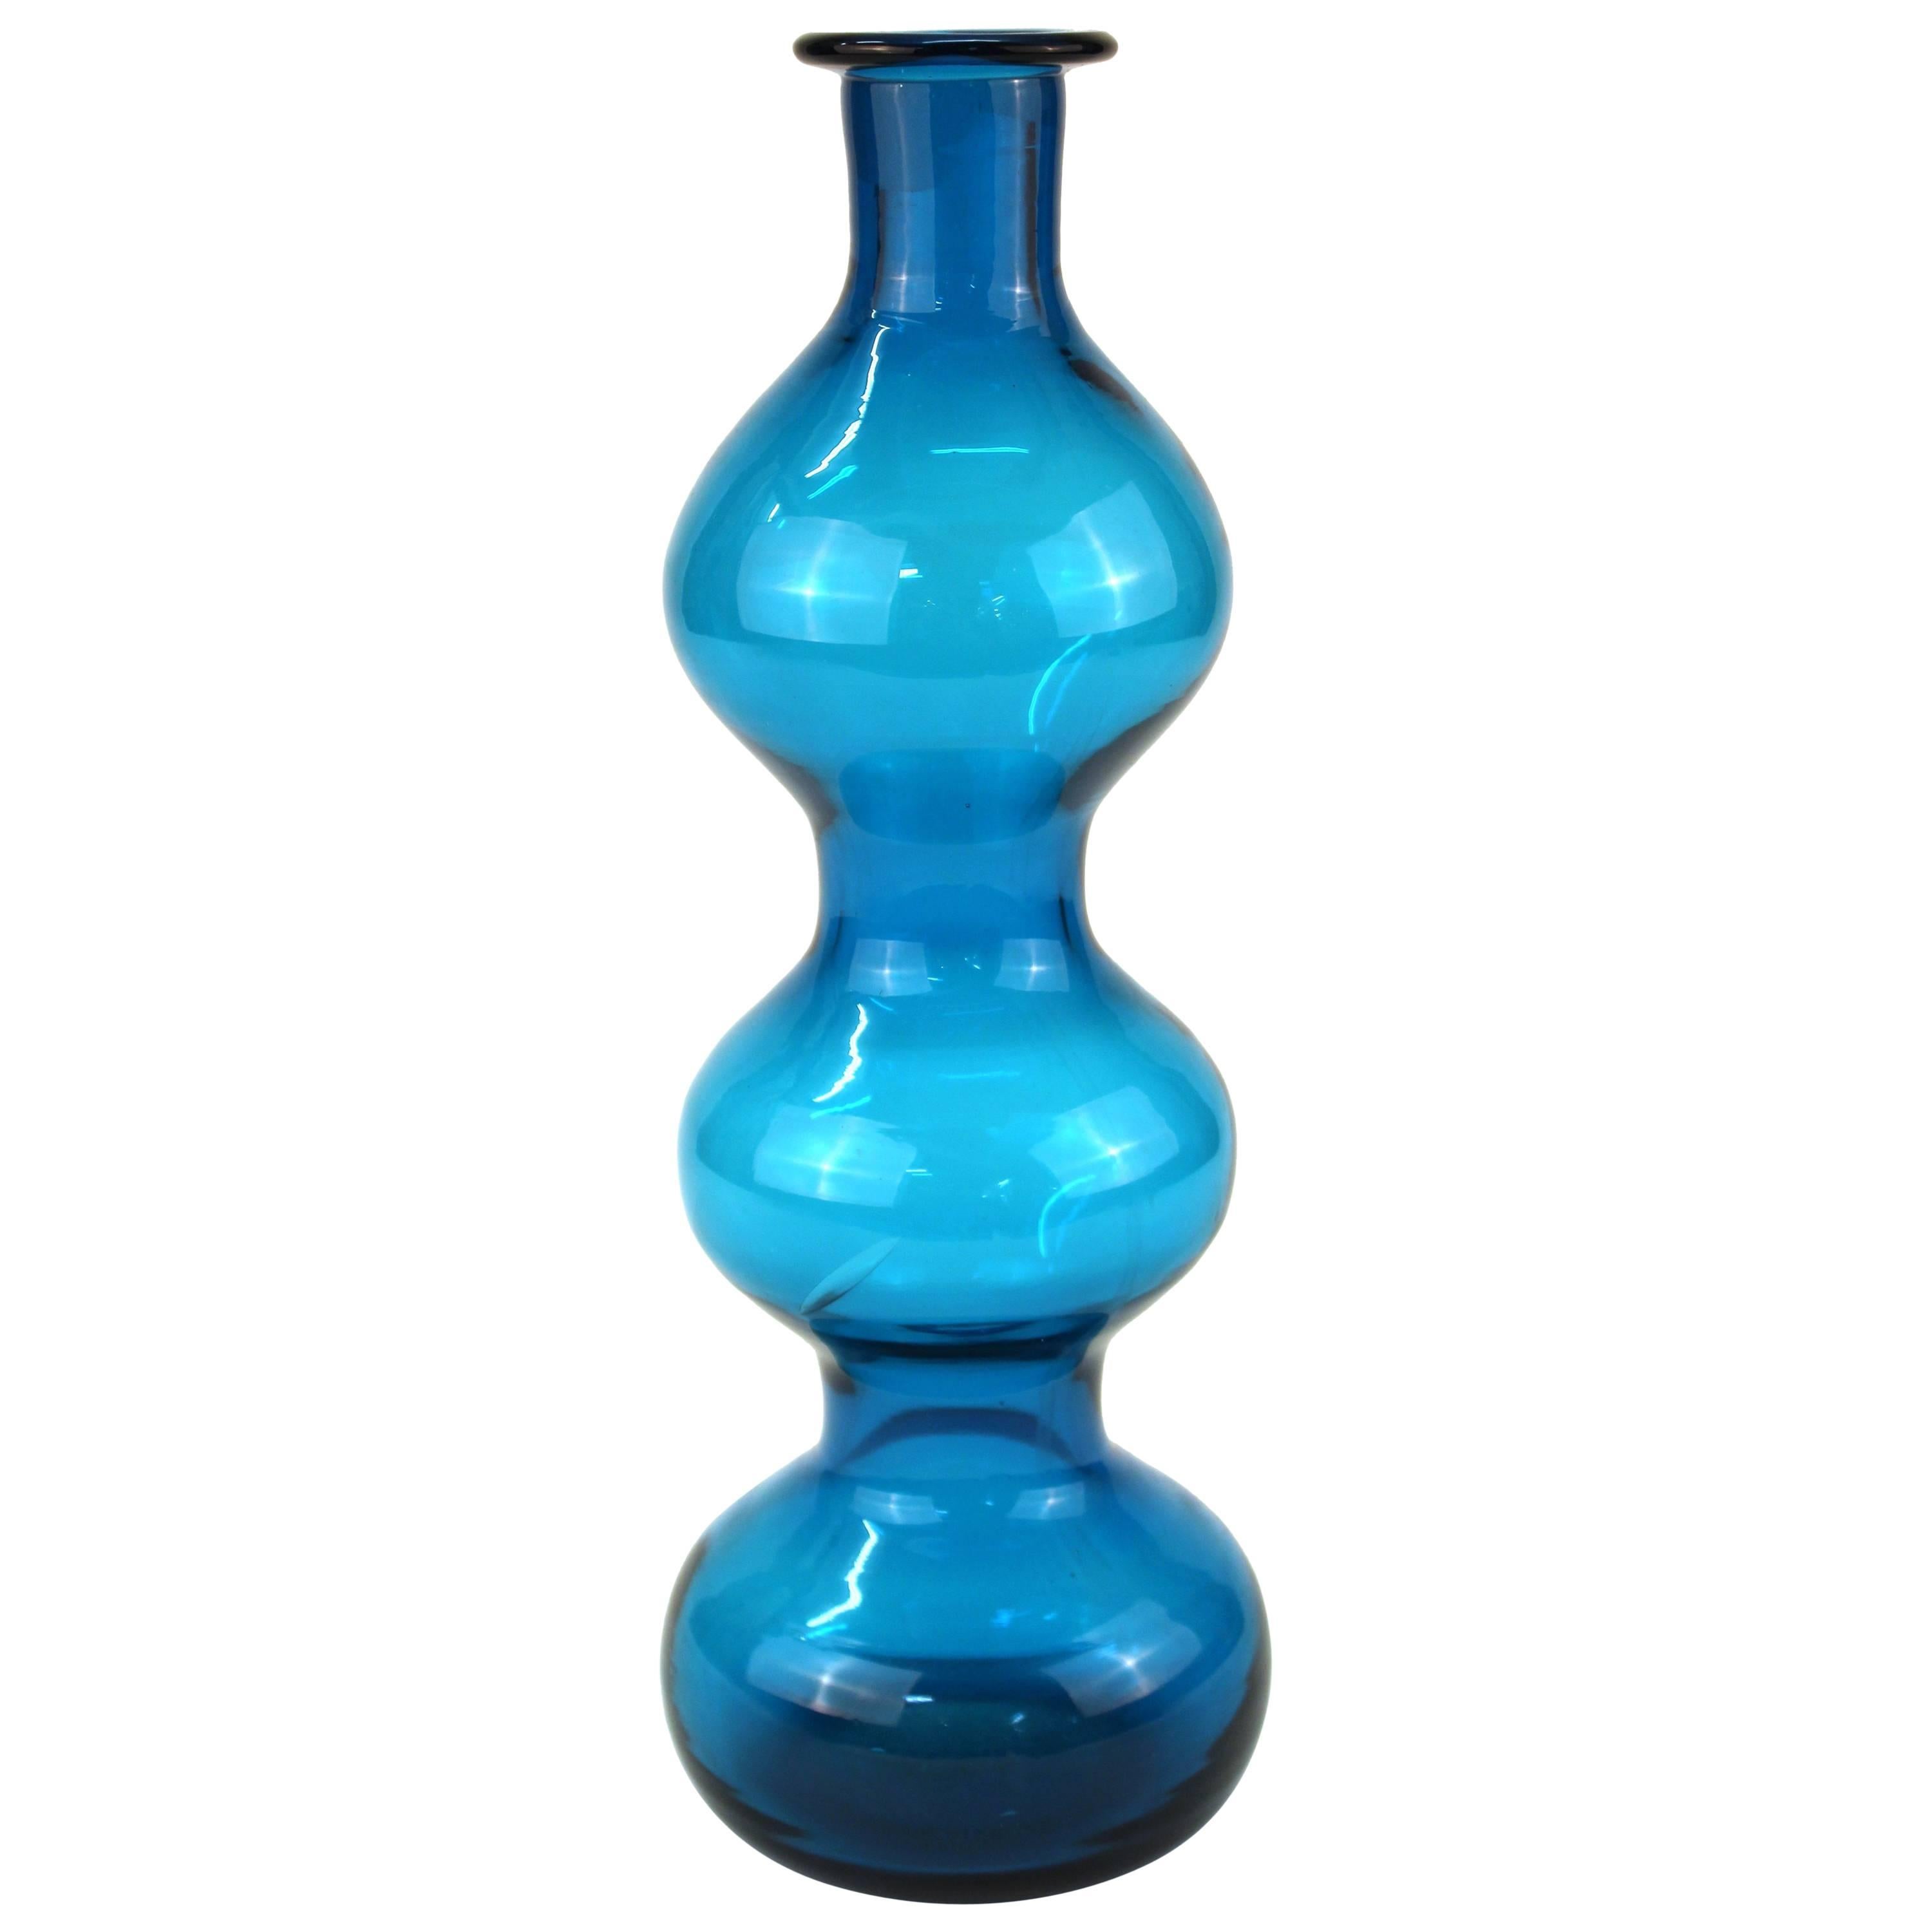 Blenko Mid-Century Modern Art Glass Bottle Vase in Blue-Green